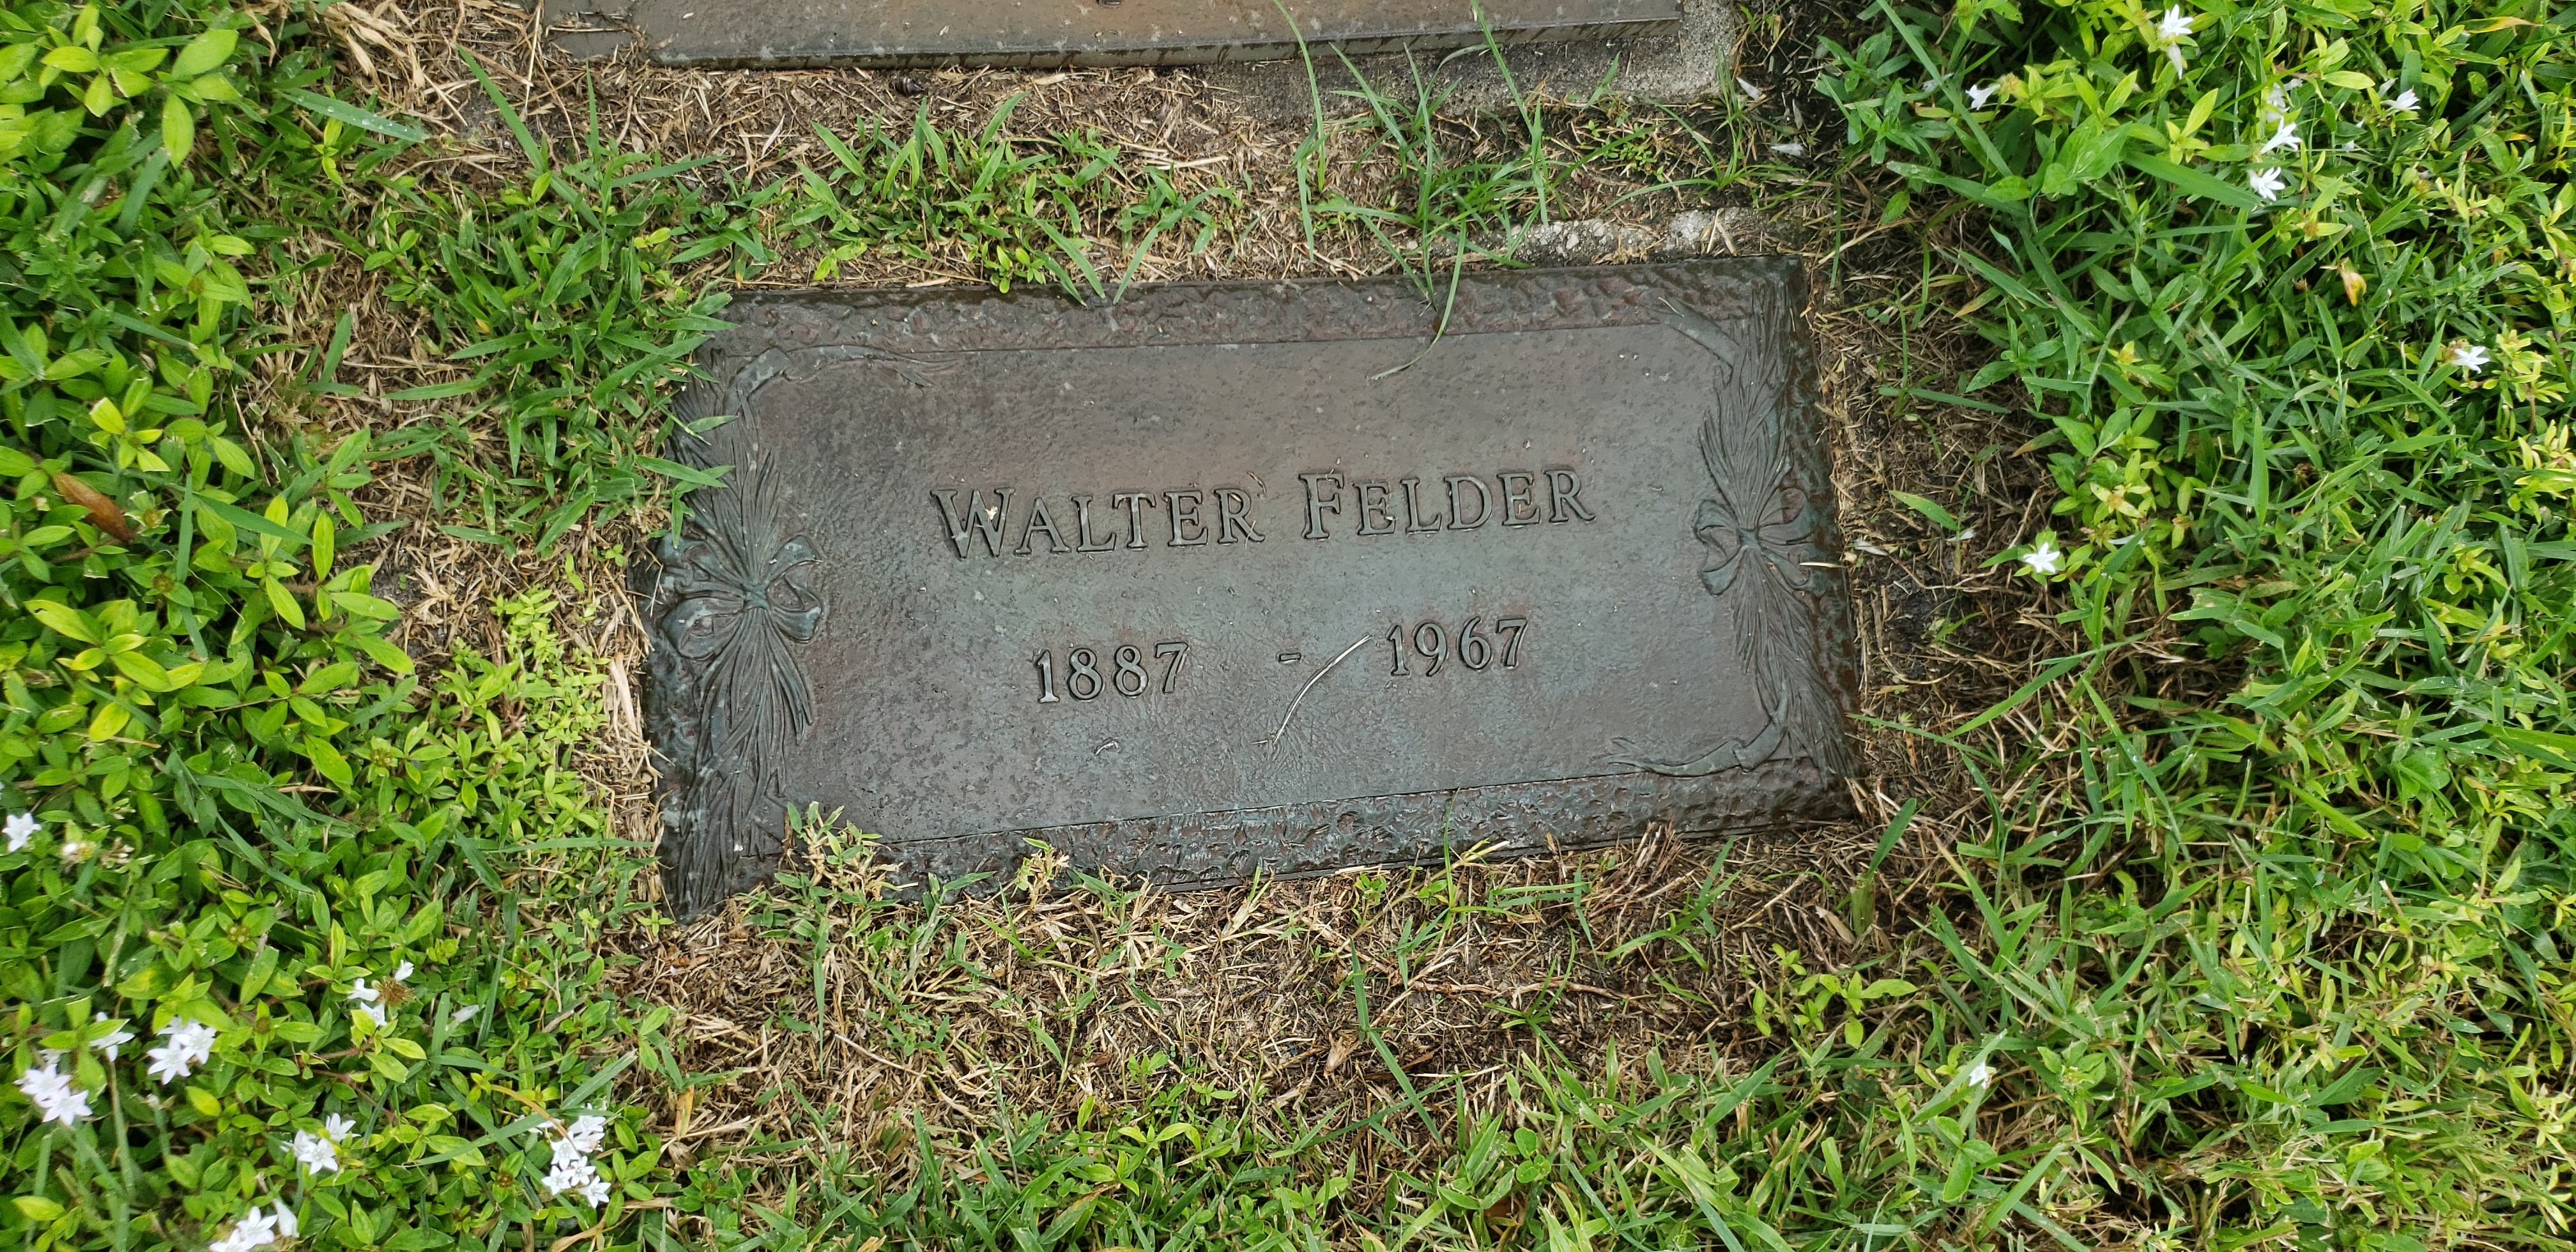 Walter Felder